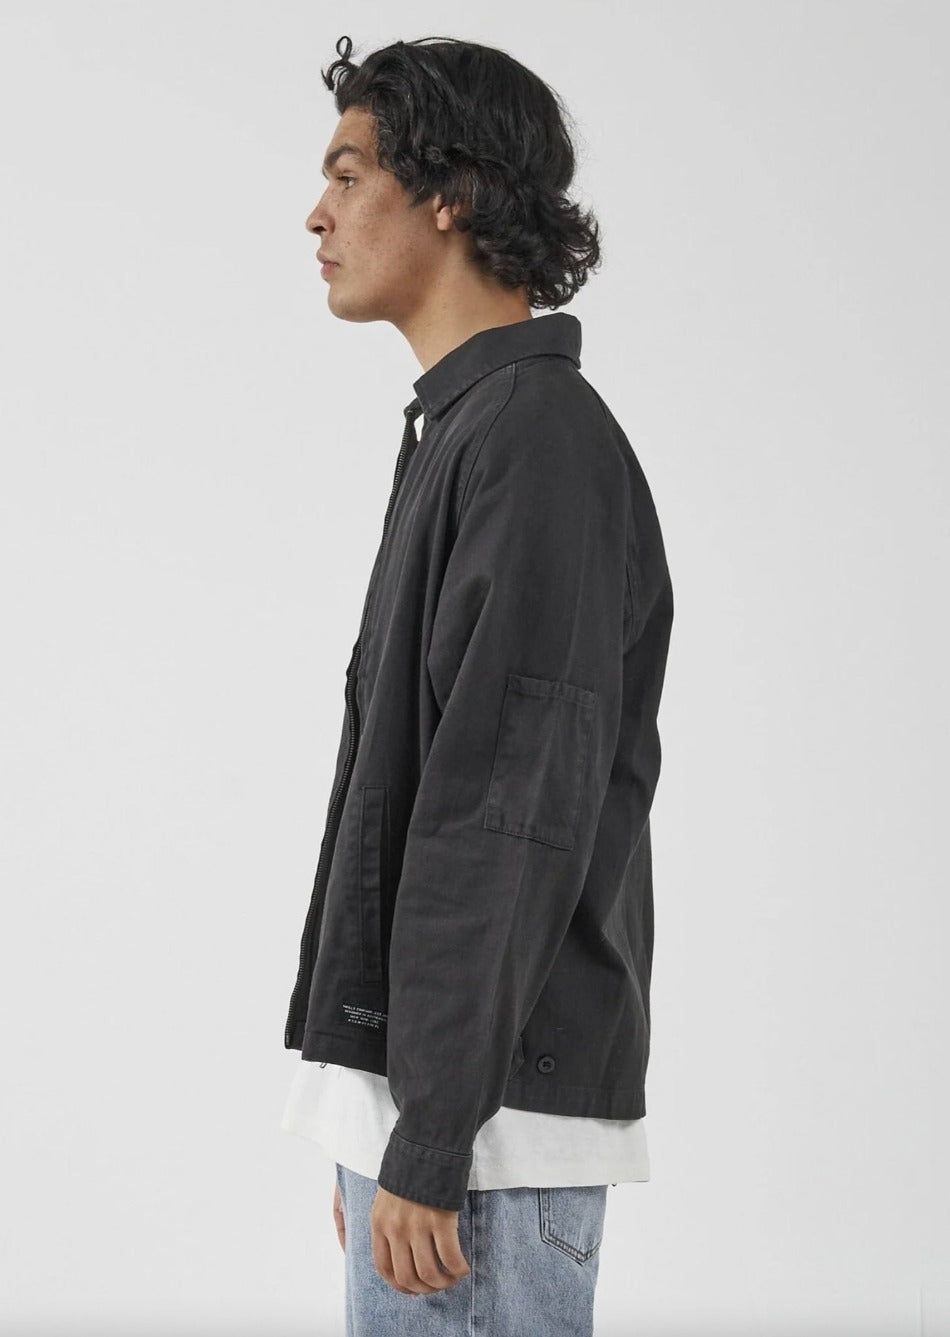 Minimal Work Jacket - Washed Black